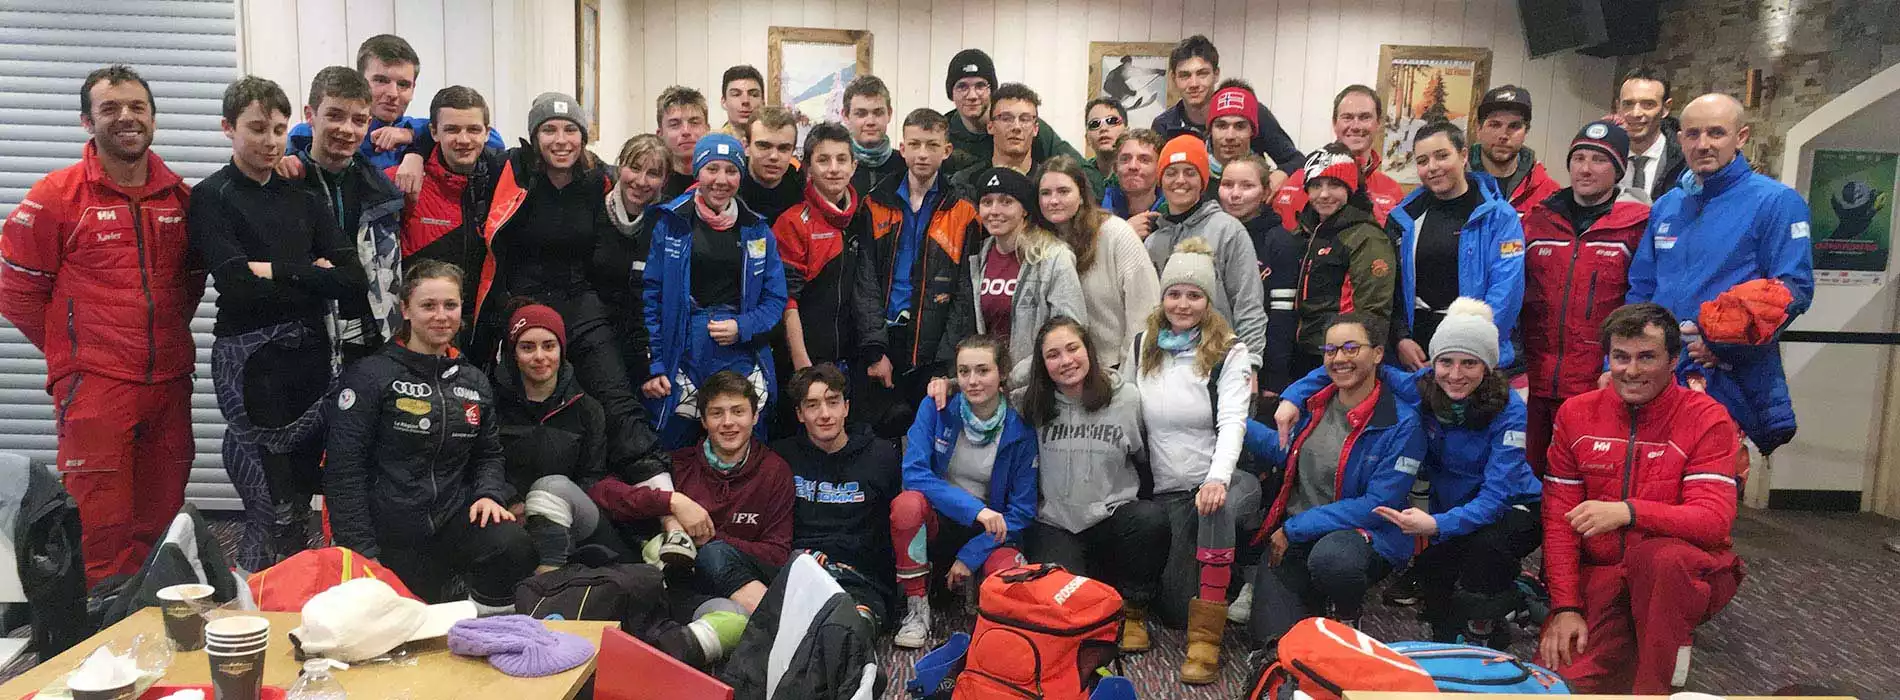 Formation classes D.E. Alsace - Vosges devenir moniteur de ski